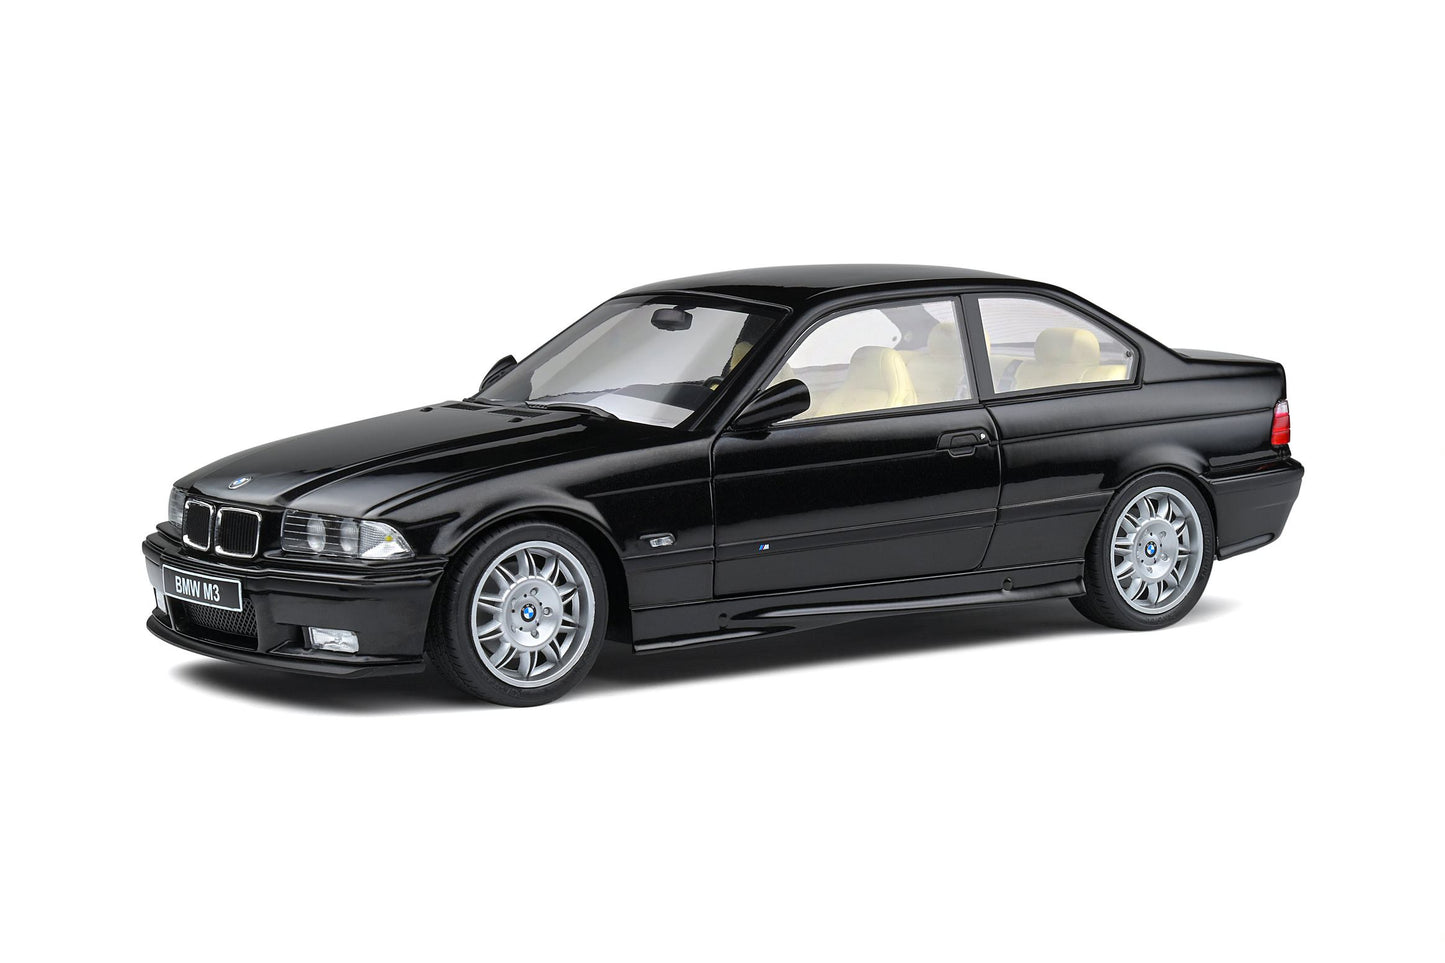 1:18 BMW E36 M3, sort, Solido 421181140, delvis åben model